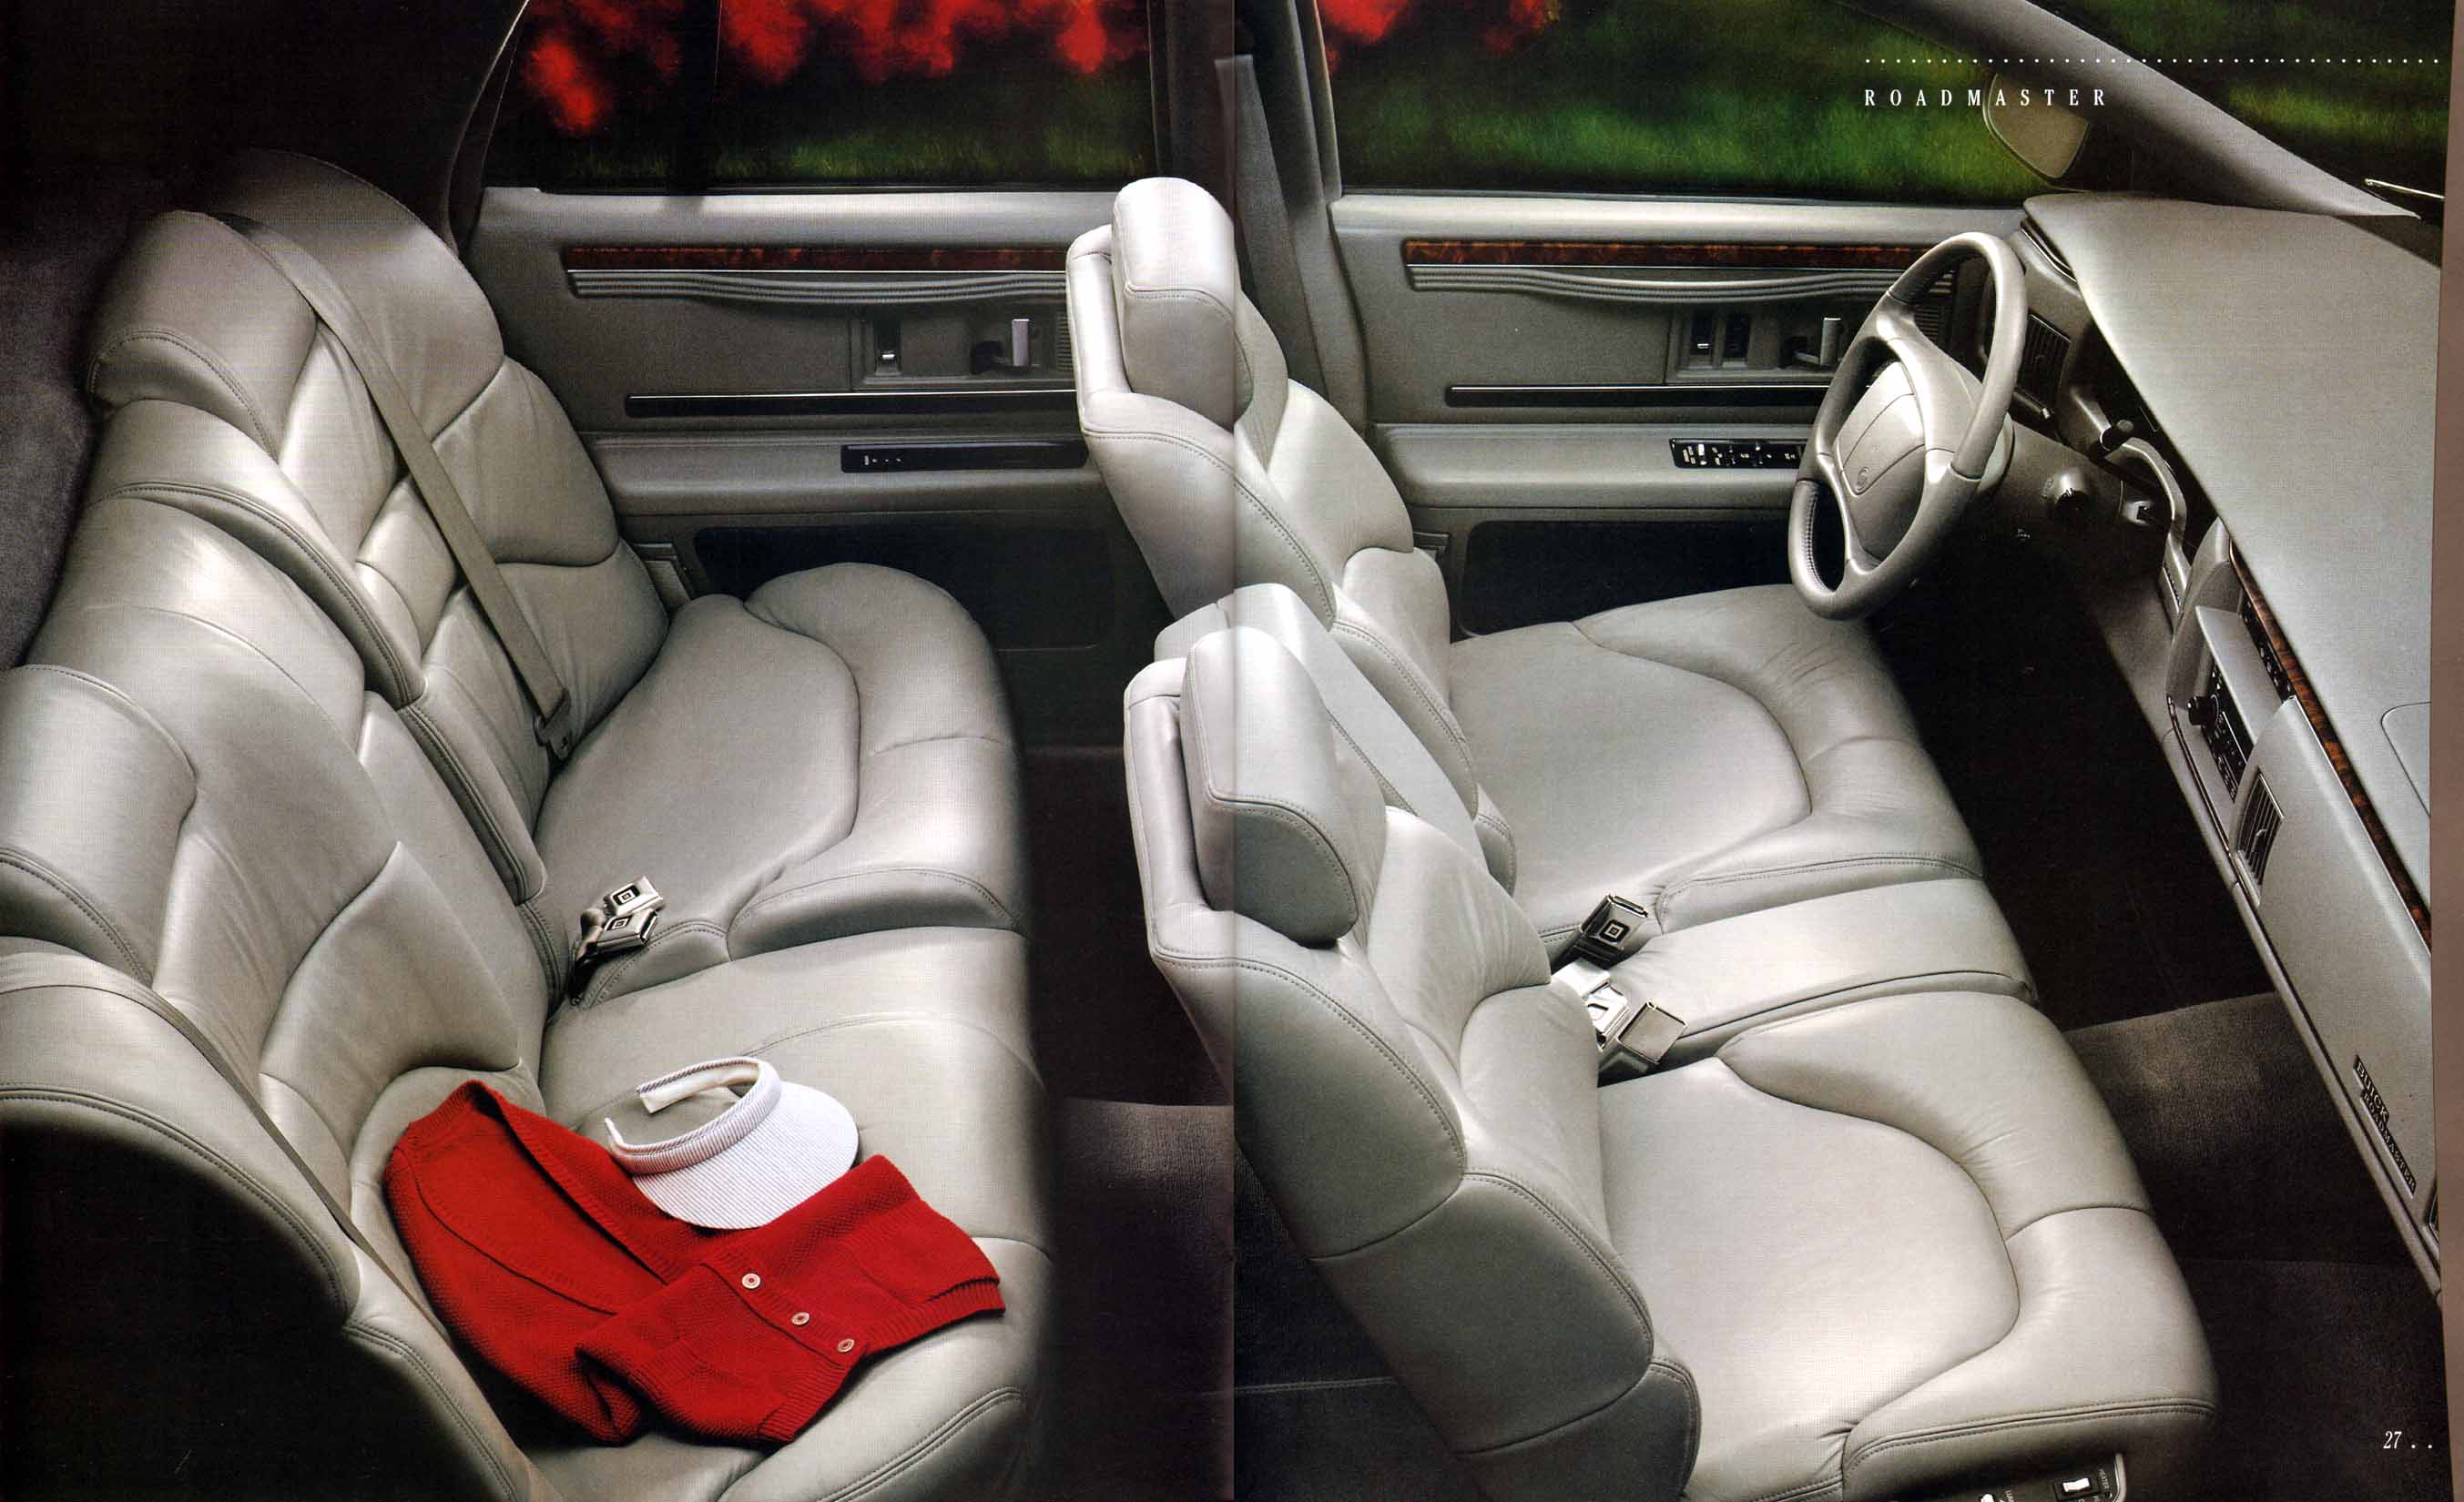 1995 Buick Full Line Prestige-26-27